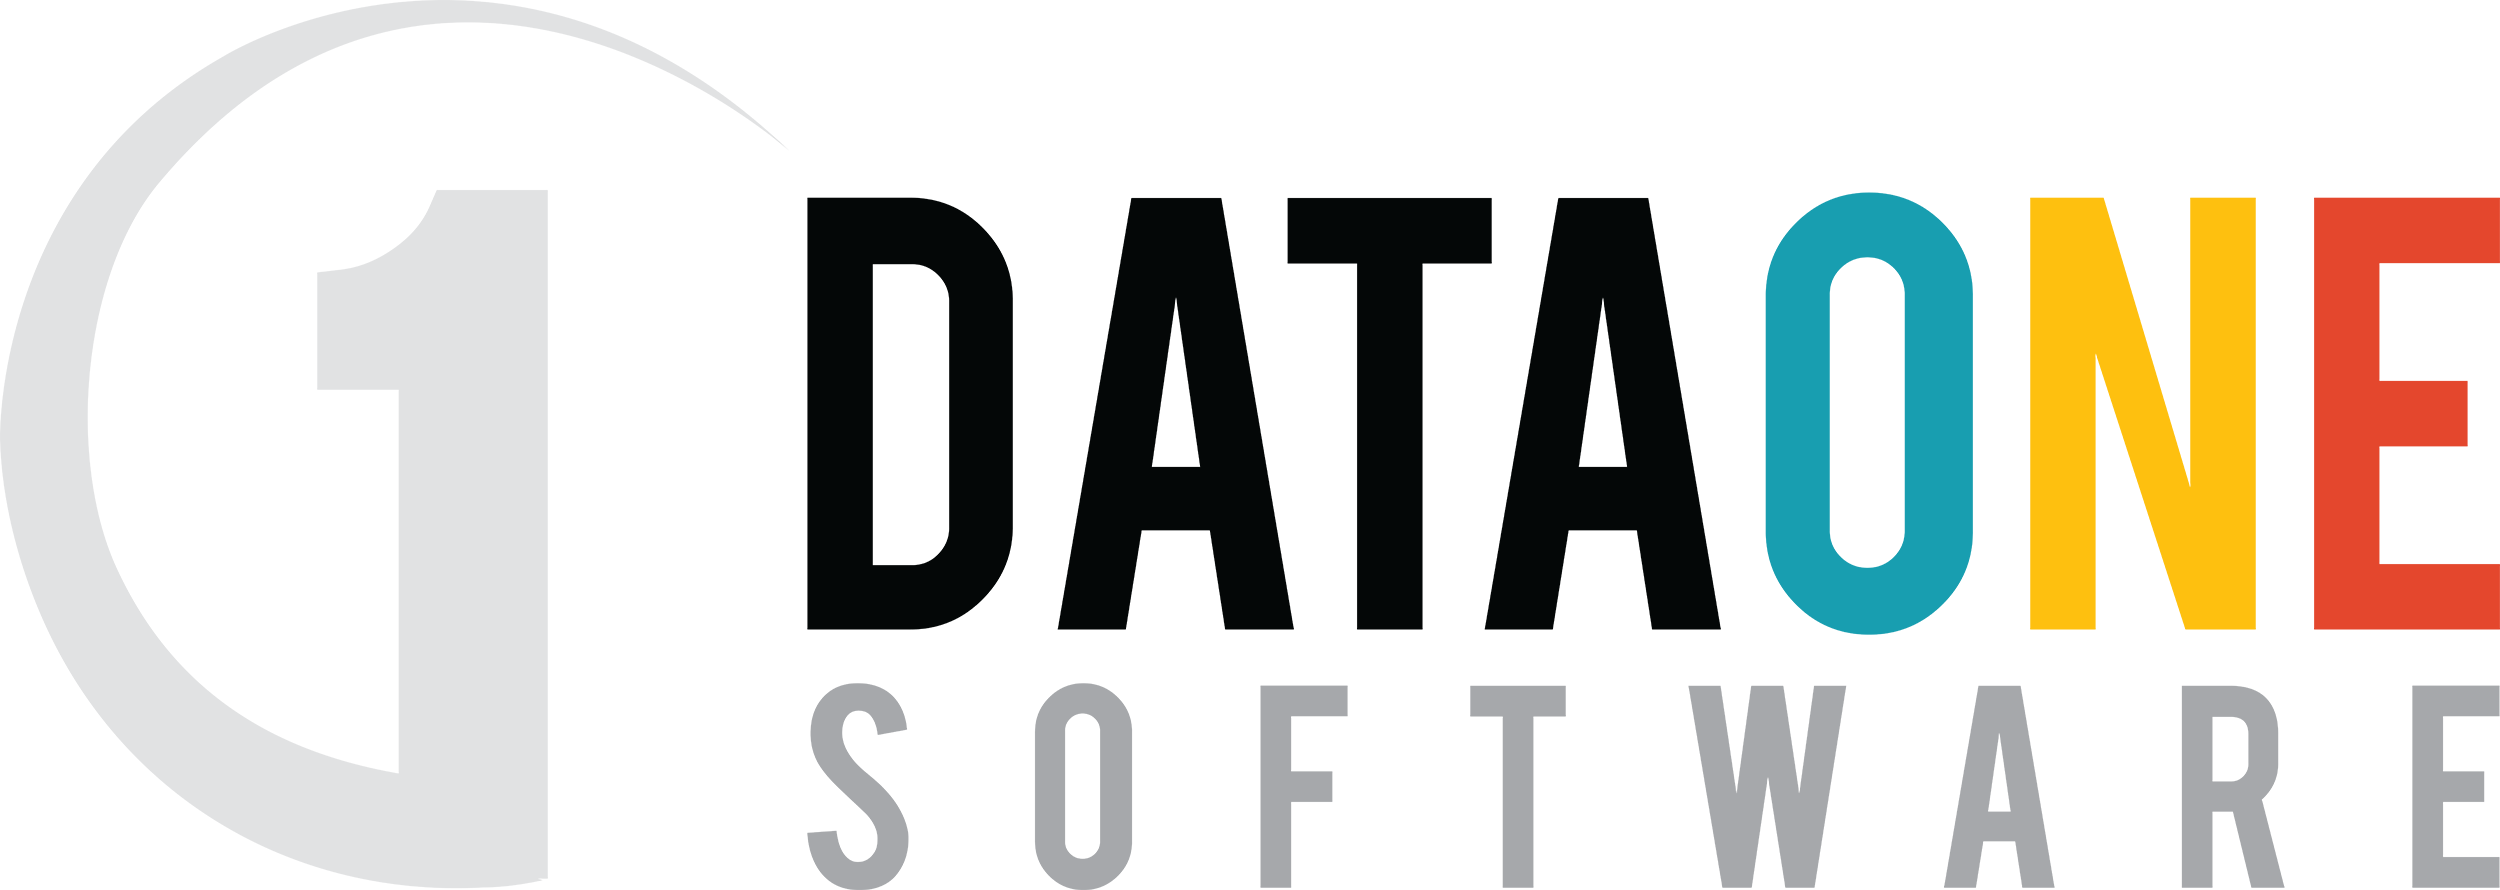 DataOne logo